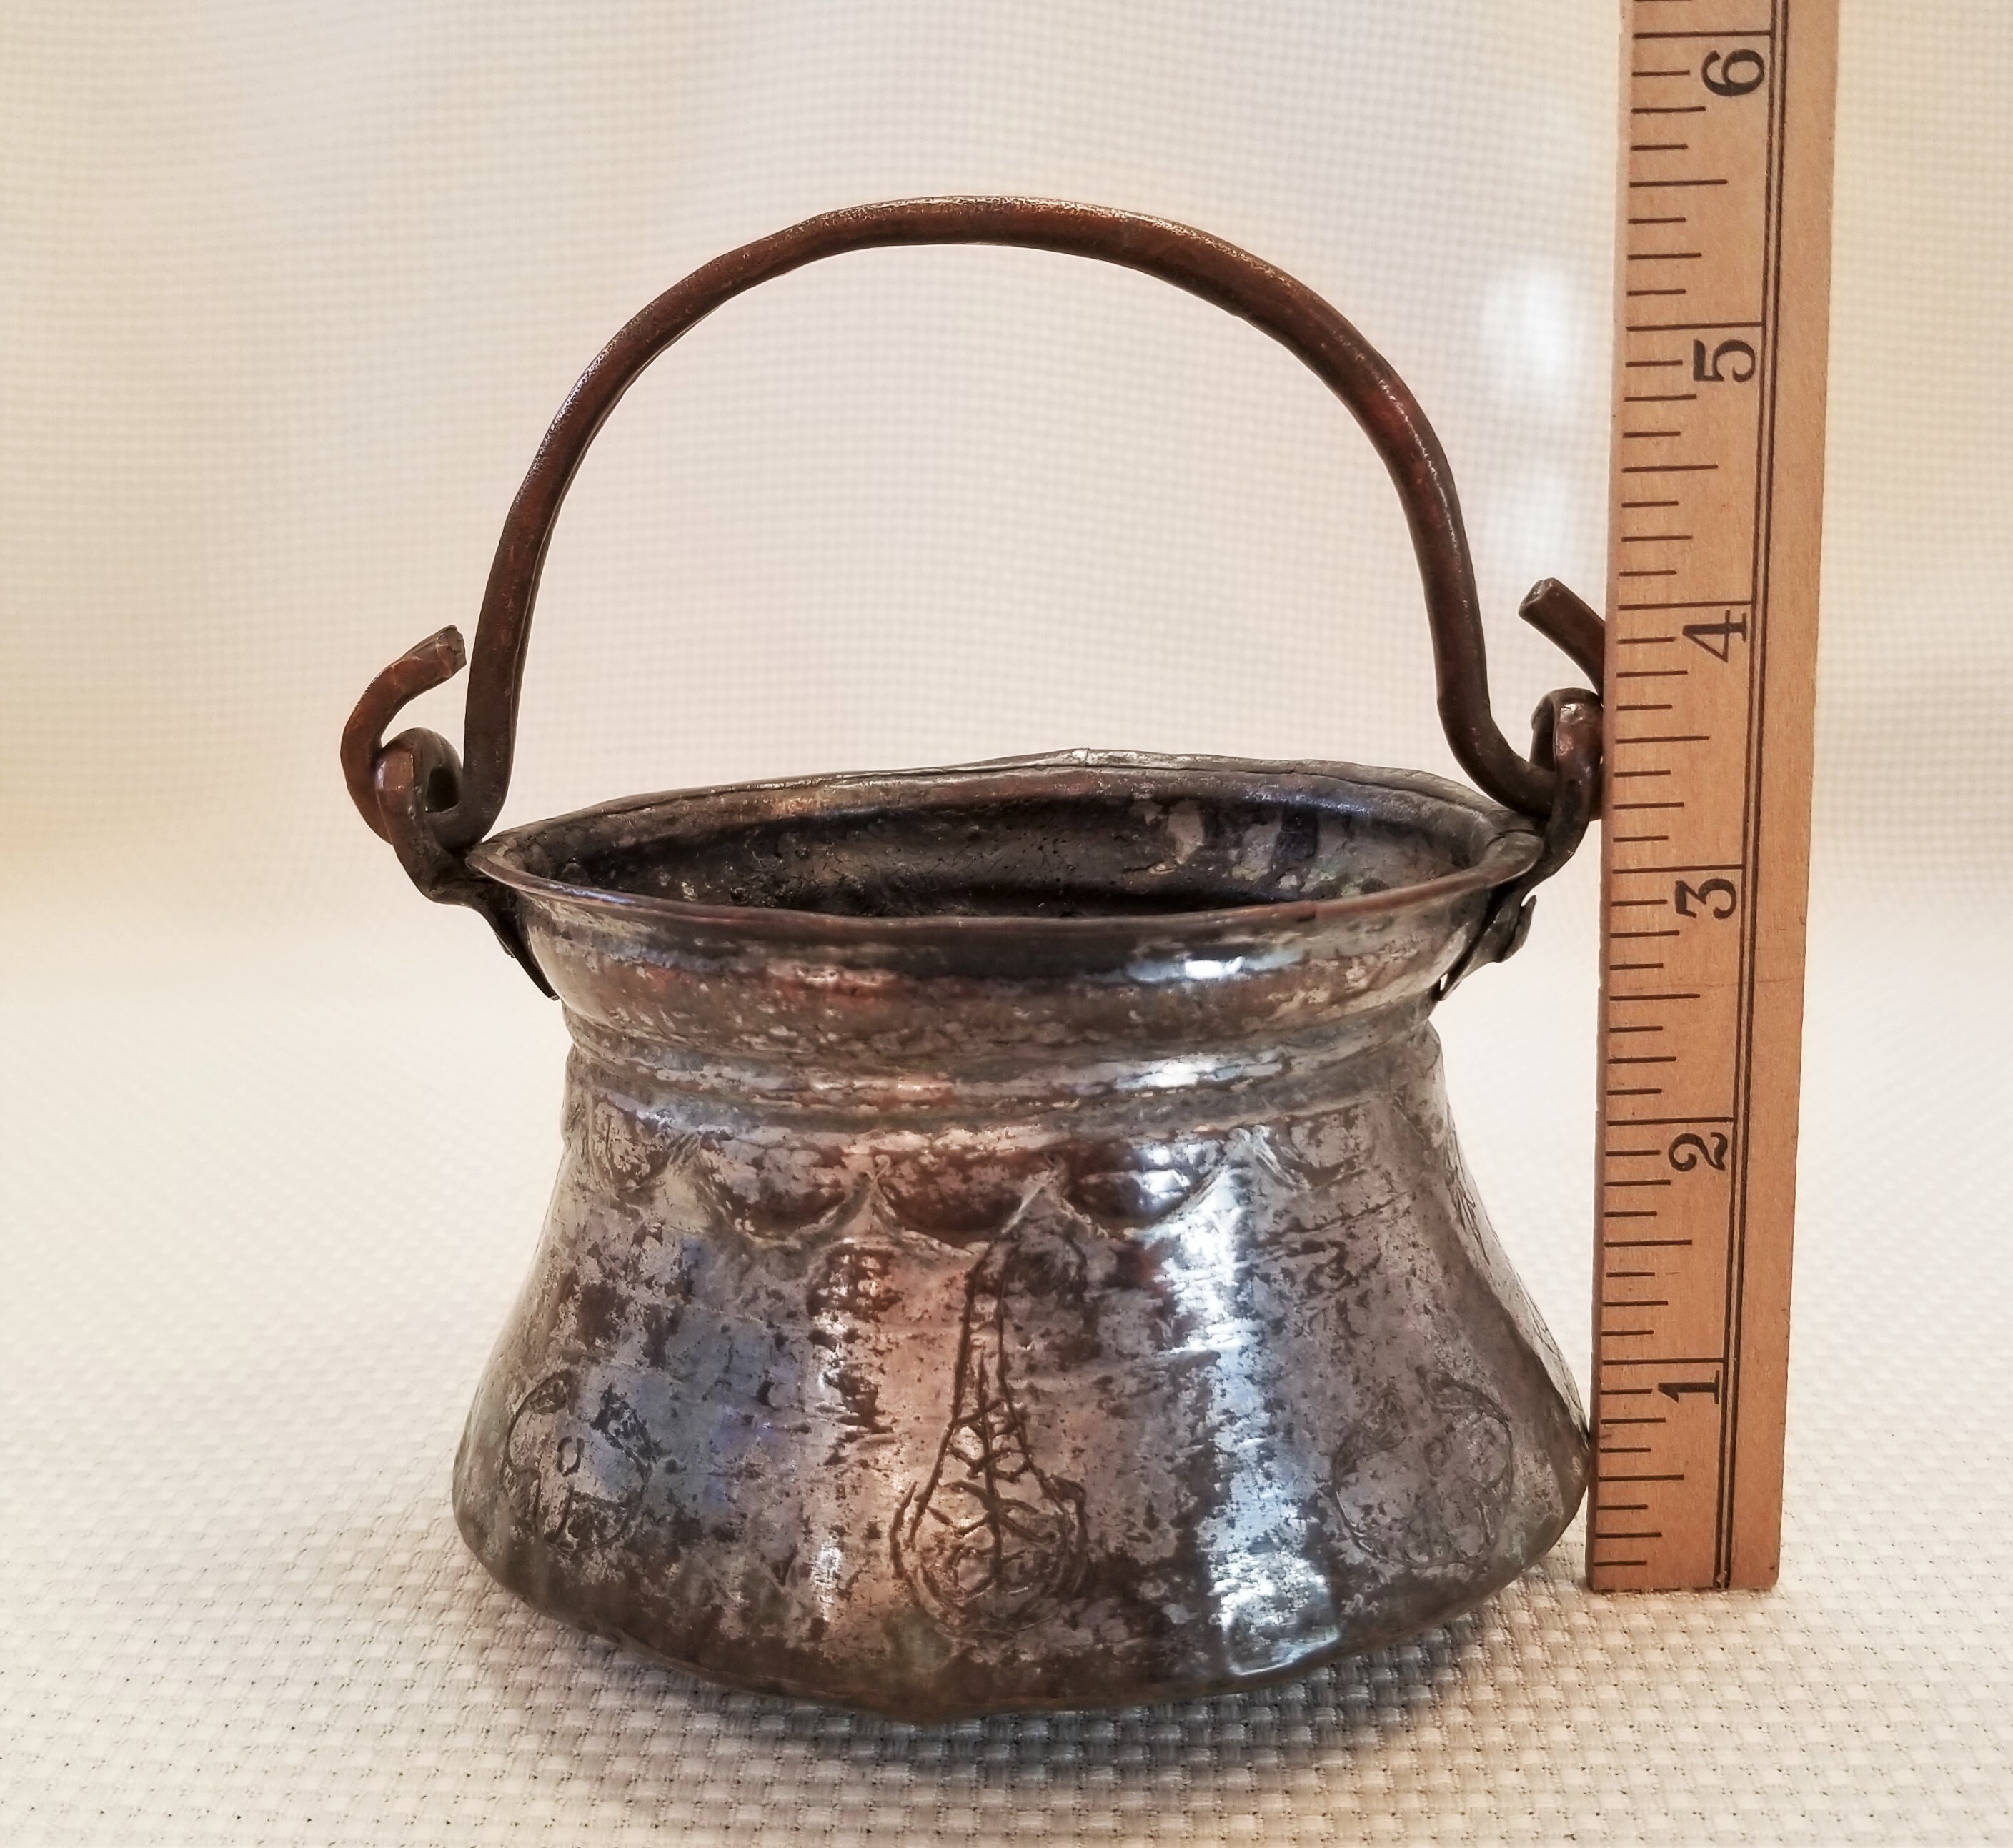 Antique Copper Candy Cauldron Pot - antiques - by owner